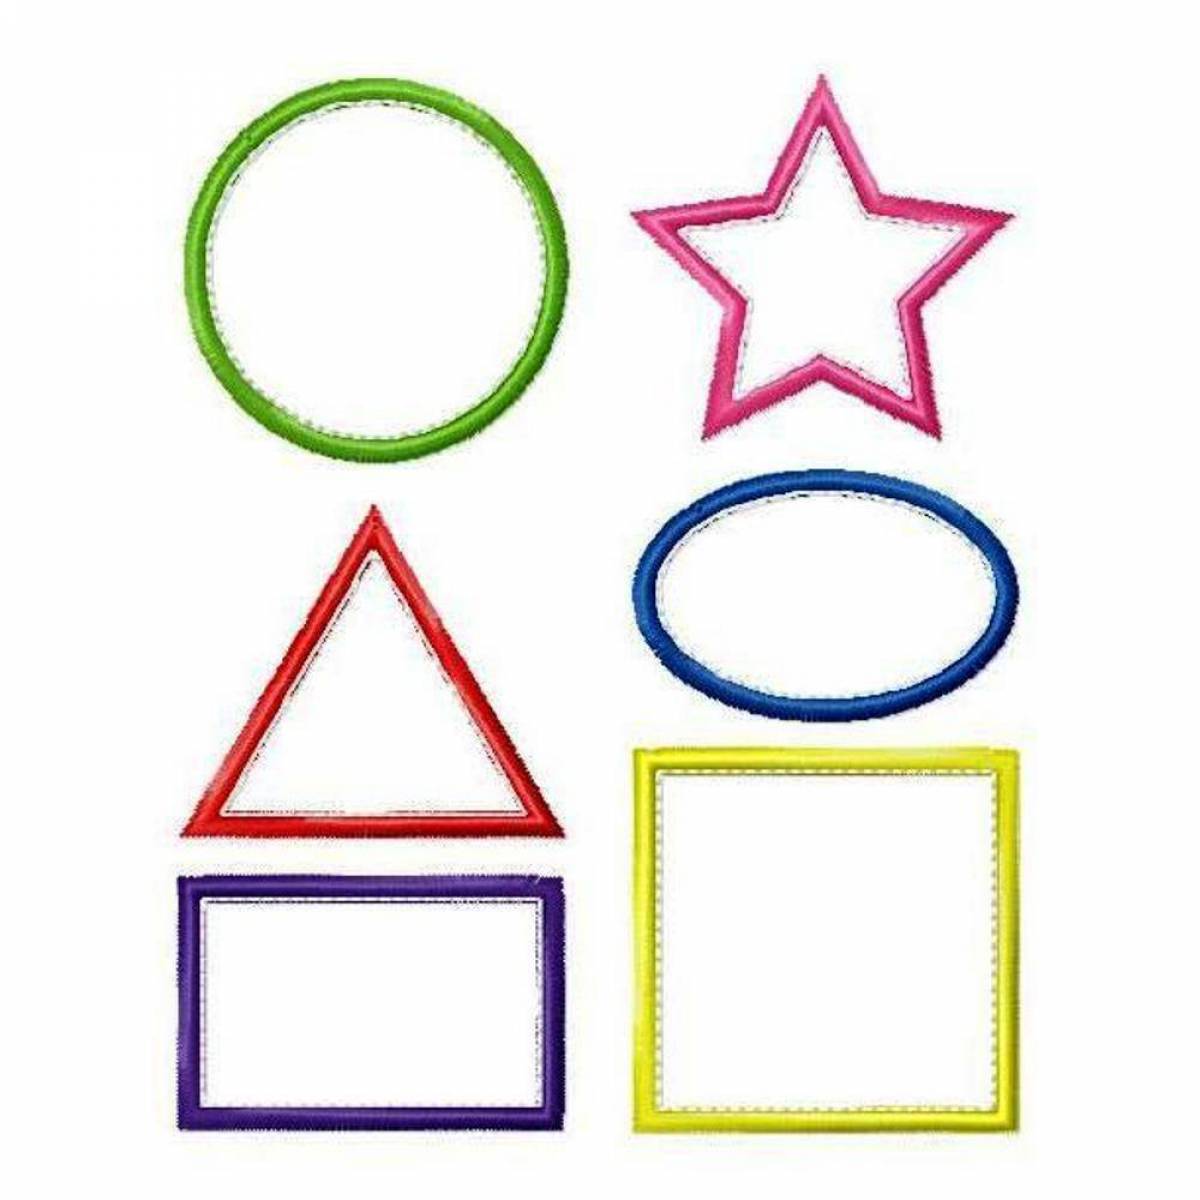 Квадрат круг треугольник вырезаны. Геометрические фигуры для детей. Геометрические фигуры для дошкольников. Геометрические фигуры для дите. Геометрические фигуры для раскрашивания.